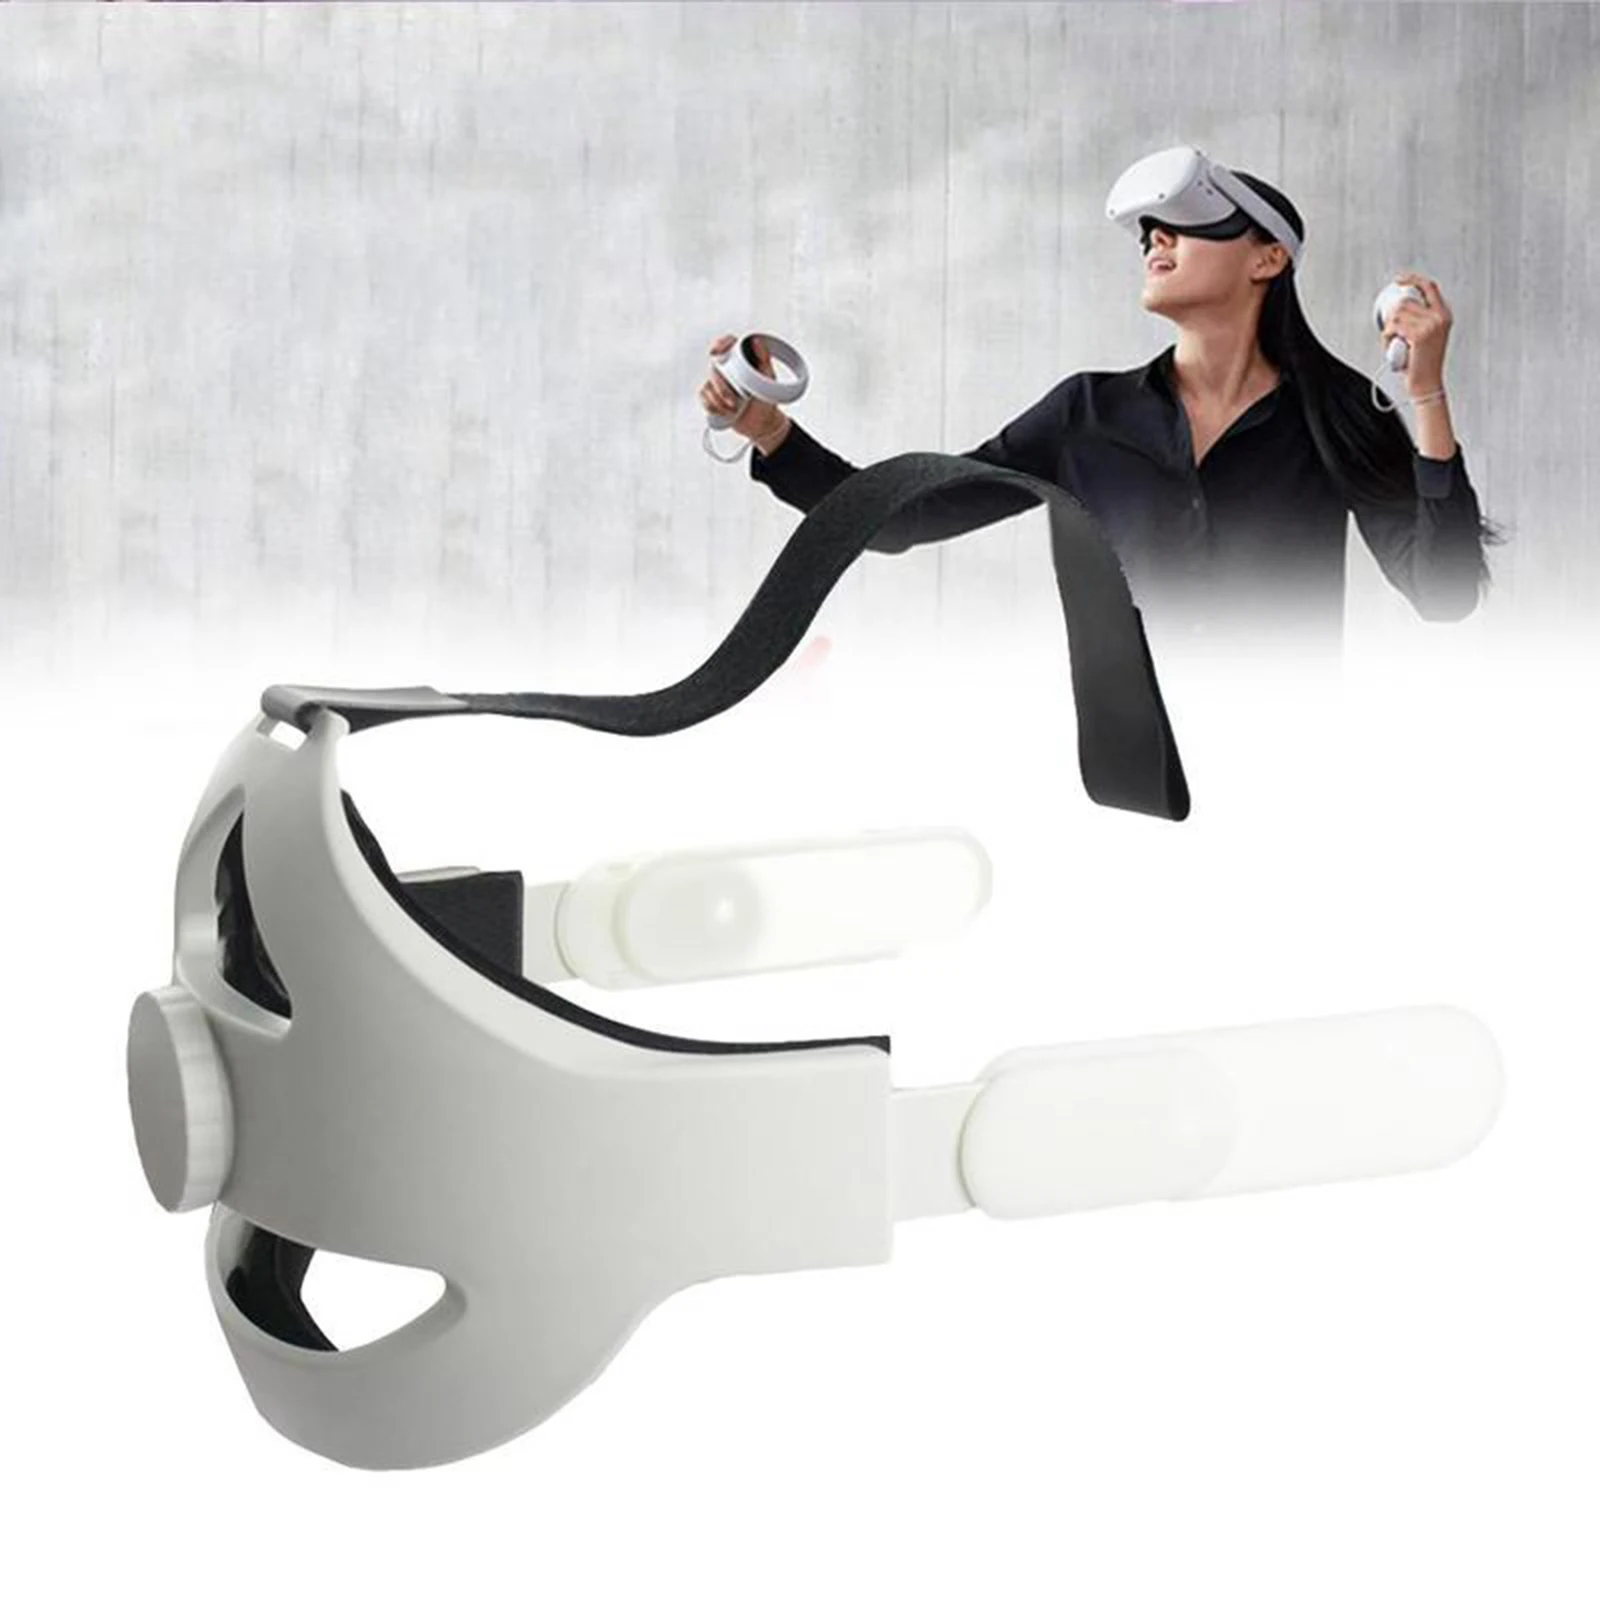 

Регулируемый ремешок для головы Quest 2, ремешок VR Elite для улучшения комфорта, уменьшения давления головы, аксессуары виртуальной реальности